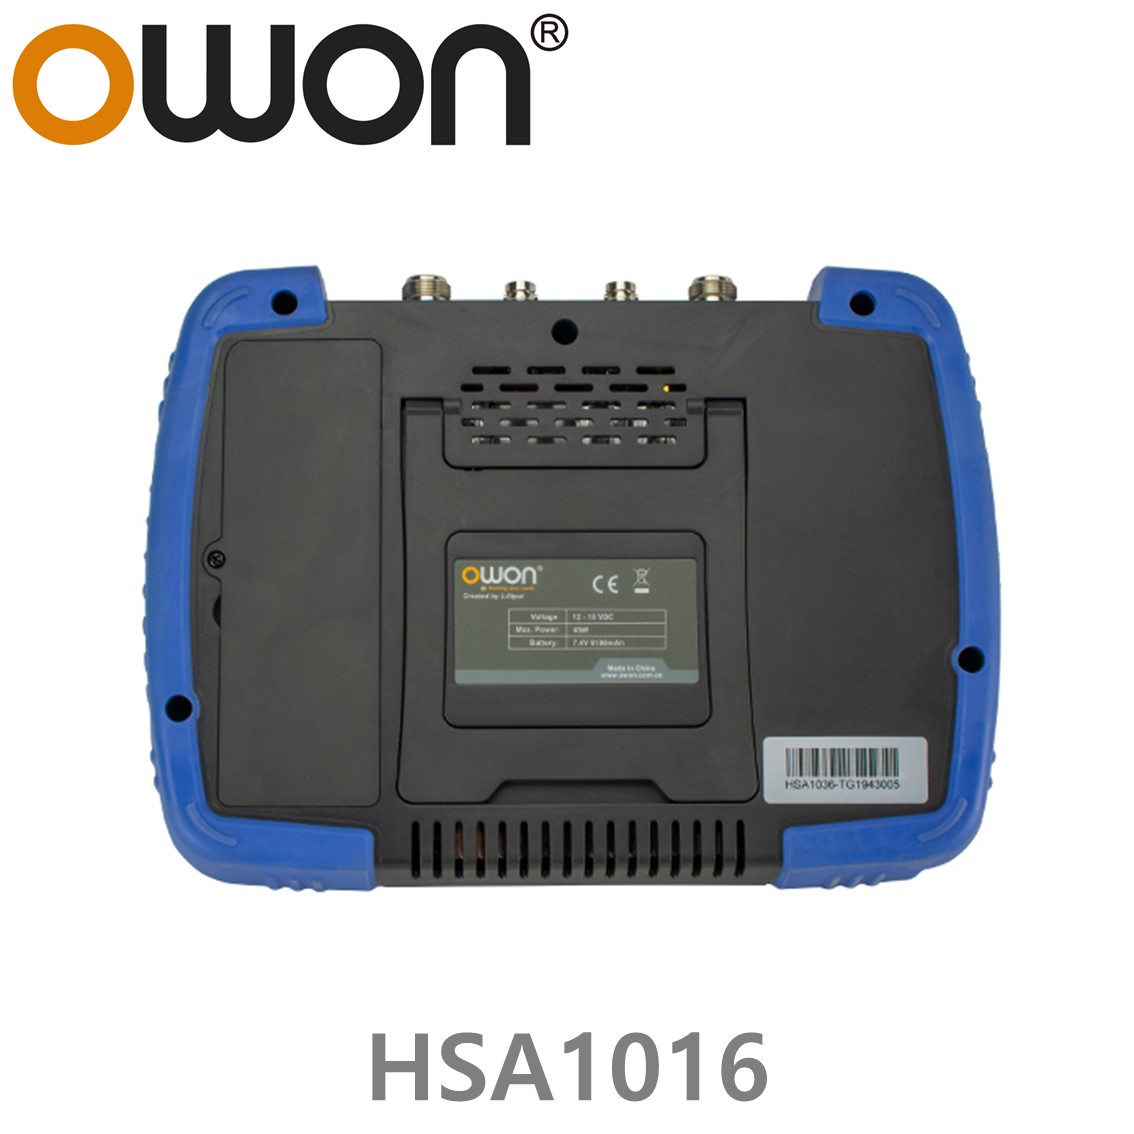 [ OWON ] HSA1016 휴대용 스펙트럼 아날라이저 9 kHz to 1.6GHz 스펙트럼 분석기